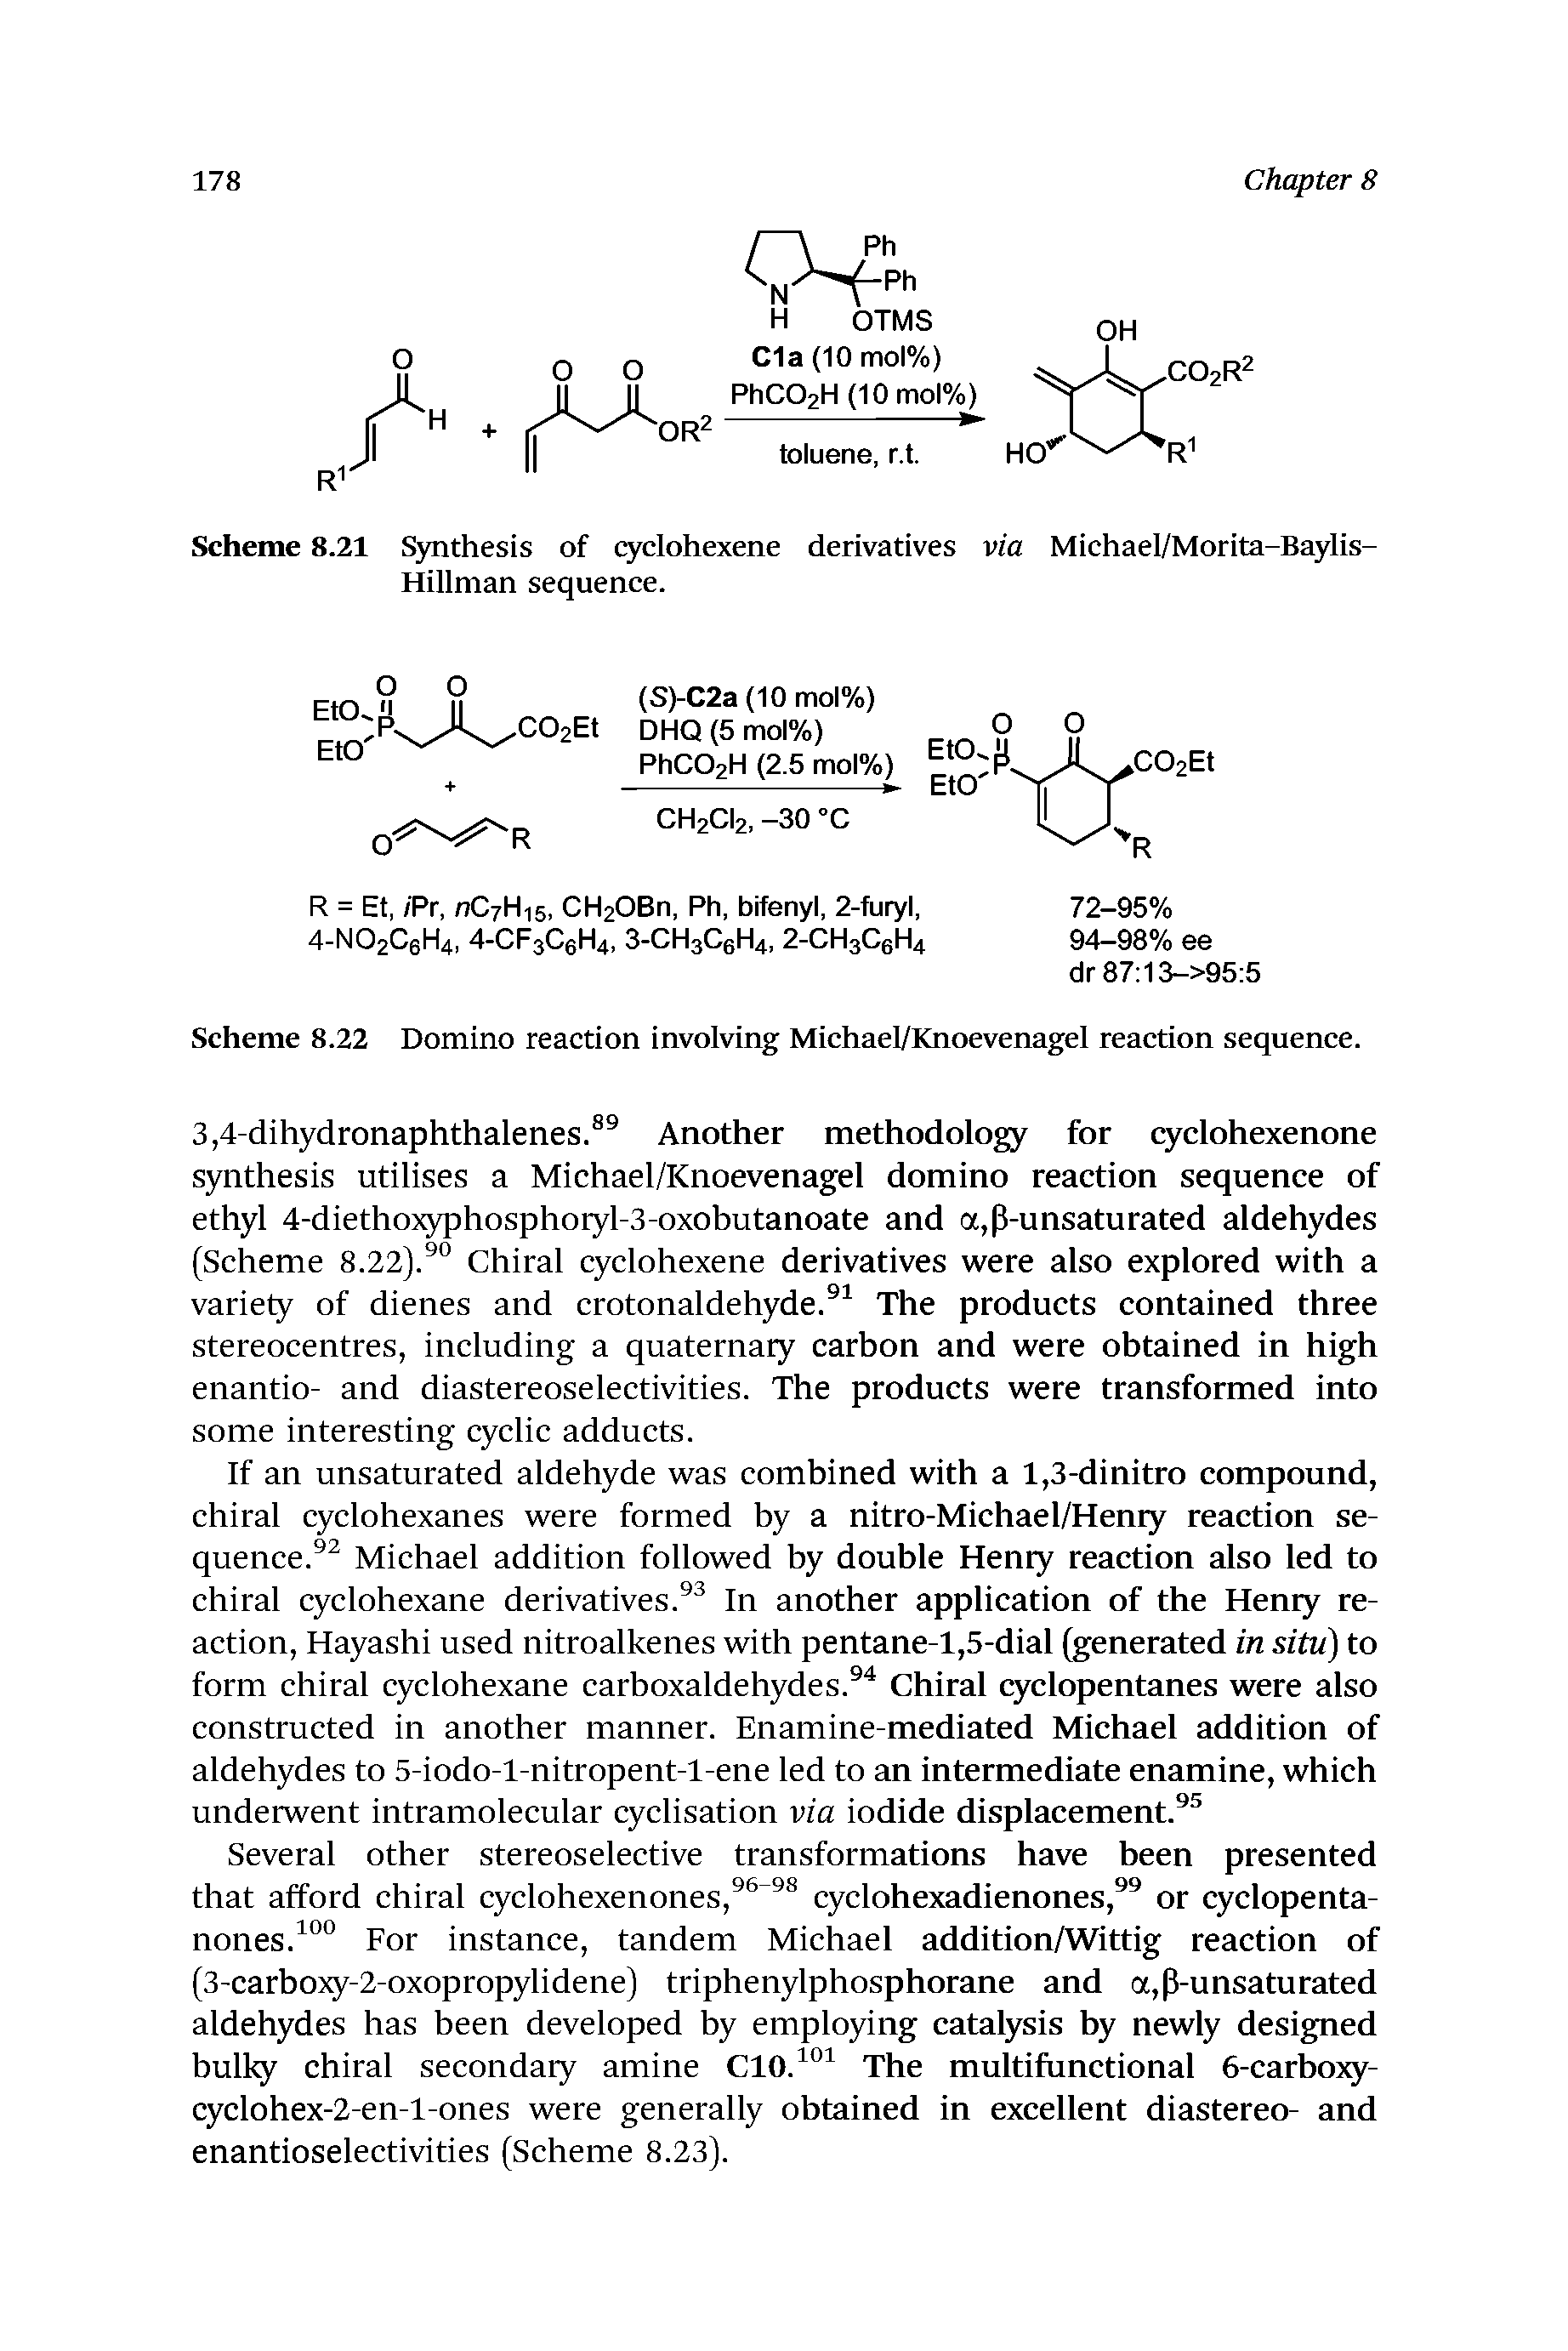 Scheme 8.21 S5mthesis of q clohexene derivatives via Michael/Morita-Baylis-Hillman sequence.